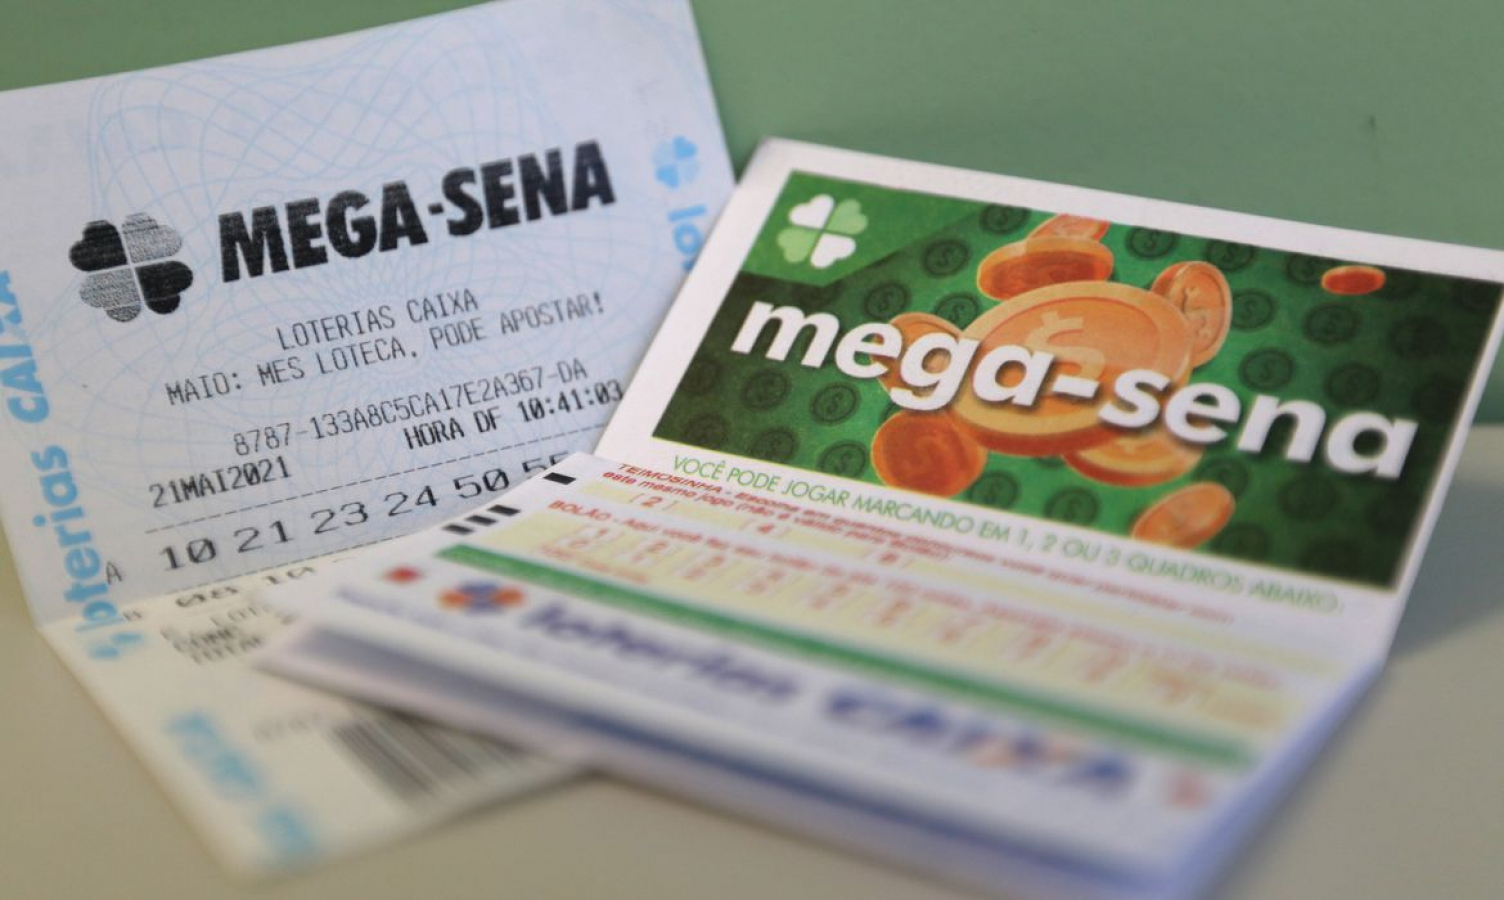 Mossoroense acerta as seis dezenas e fatura R$ 5,5 milhões na Mega-Sena